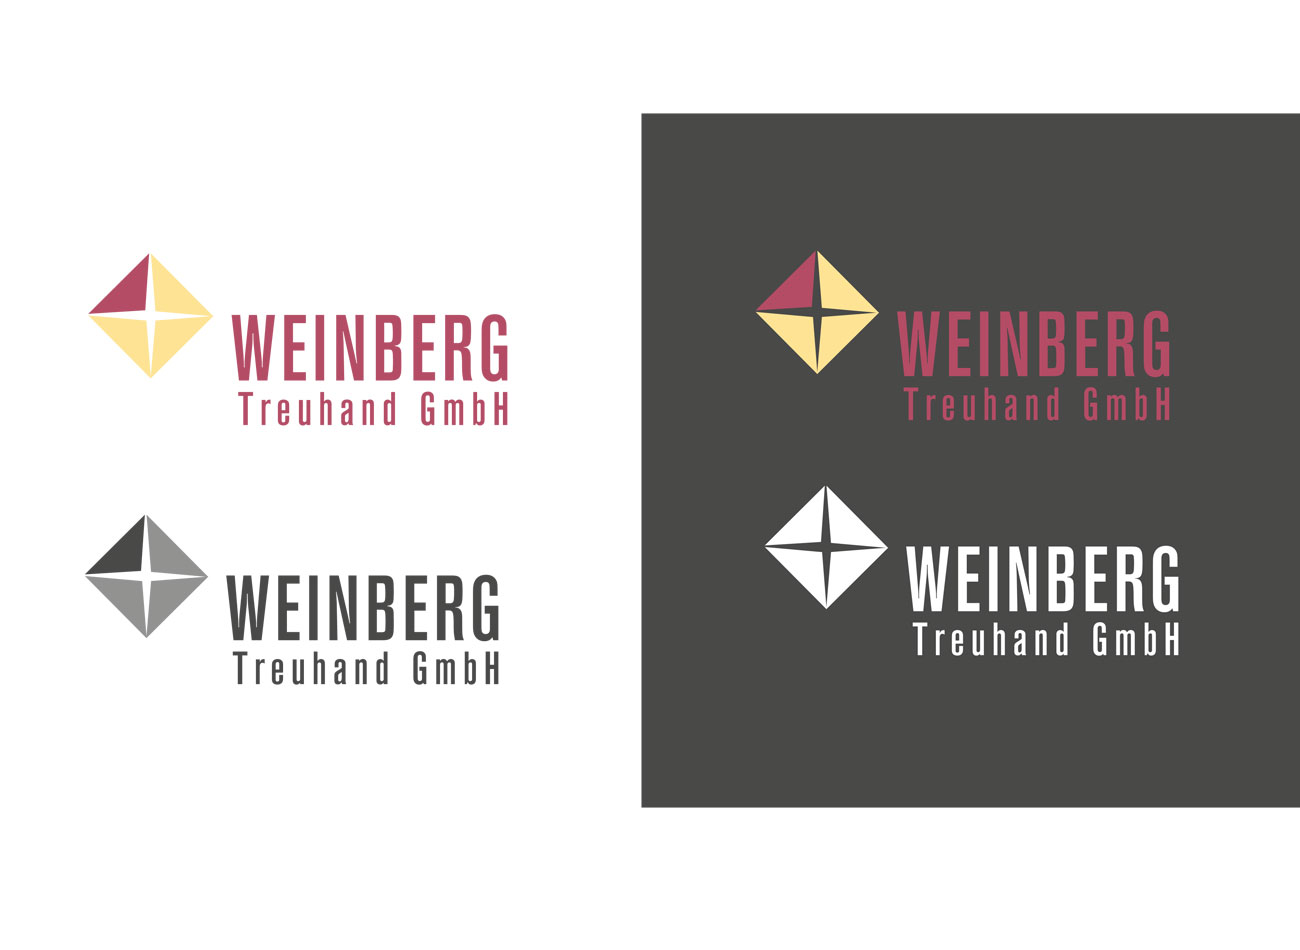 Weinberg Treuhand GmbH in Zürich, Bruno Theen, Briefschaften, Logo, Fotografie, Webdesign